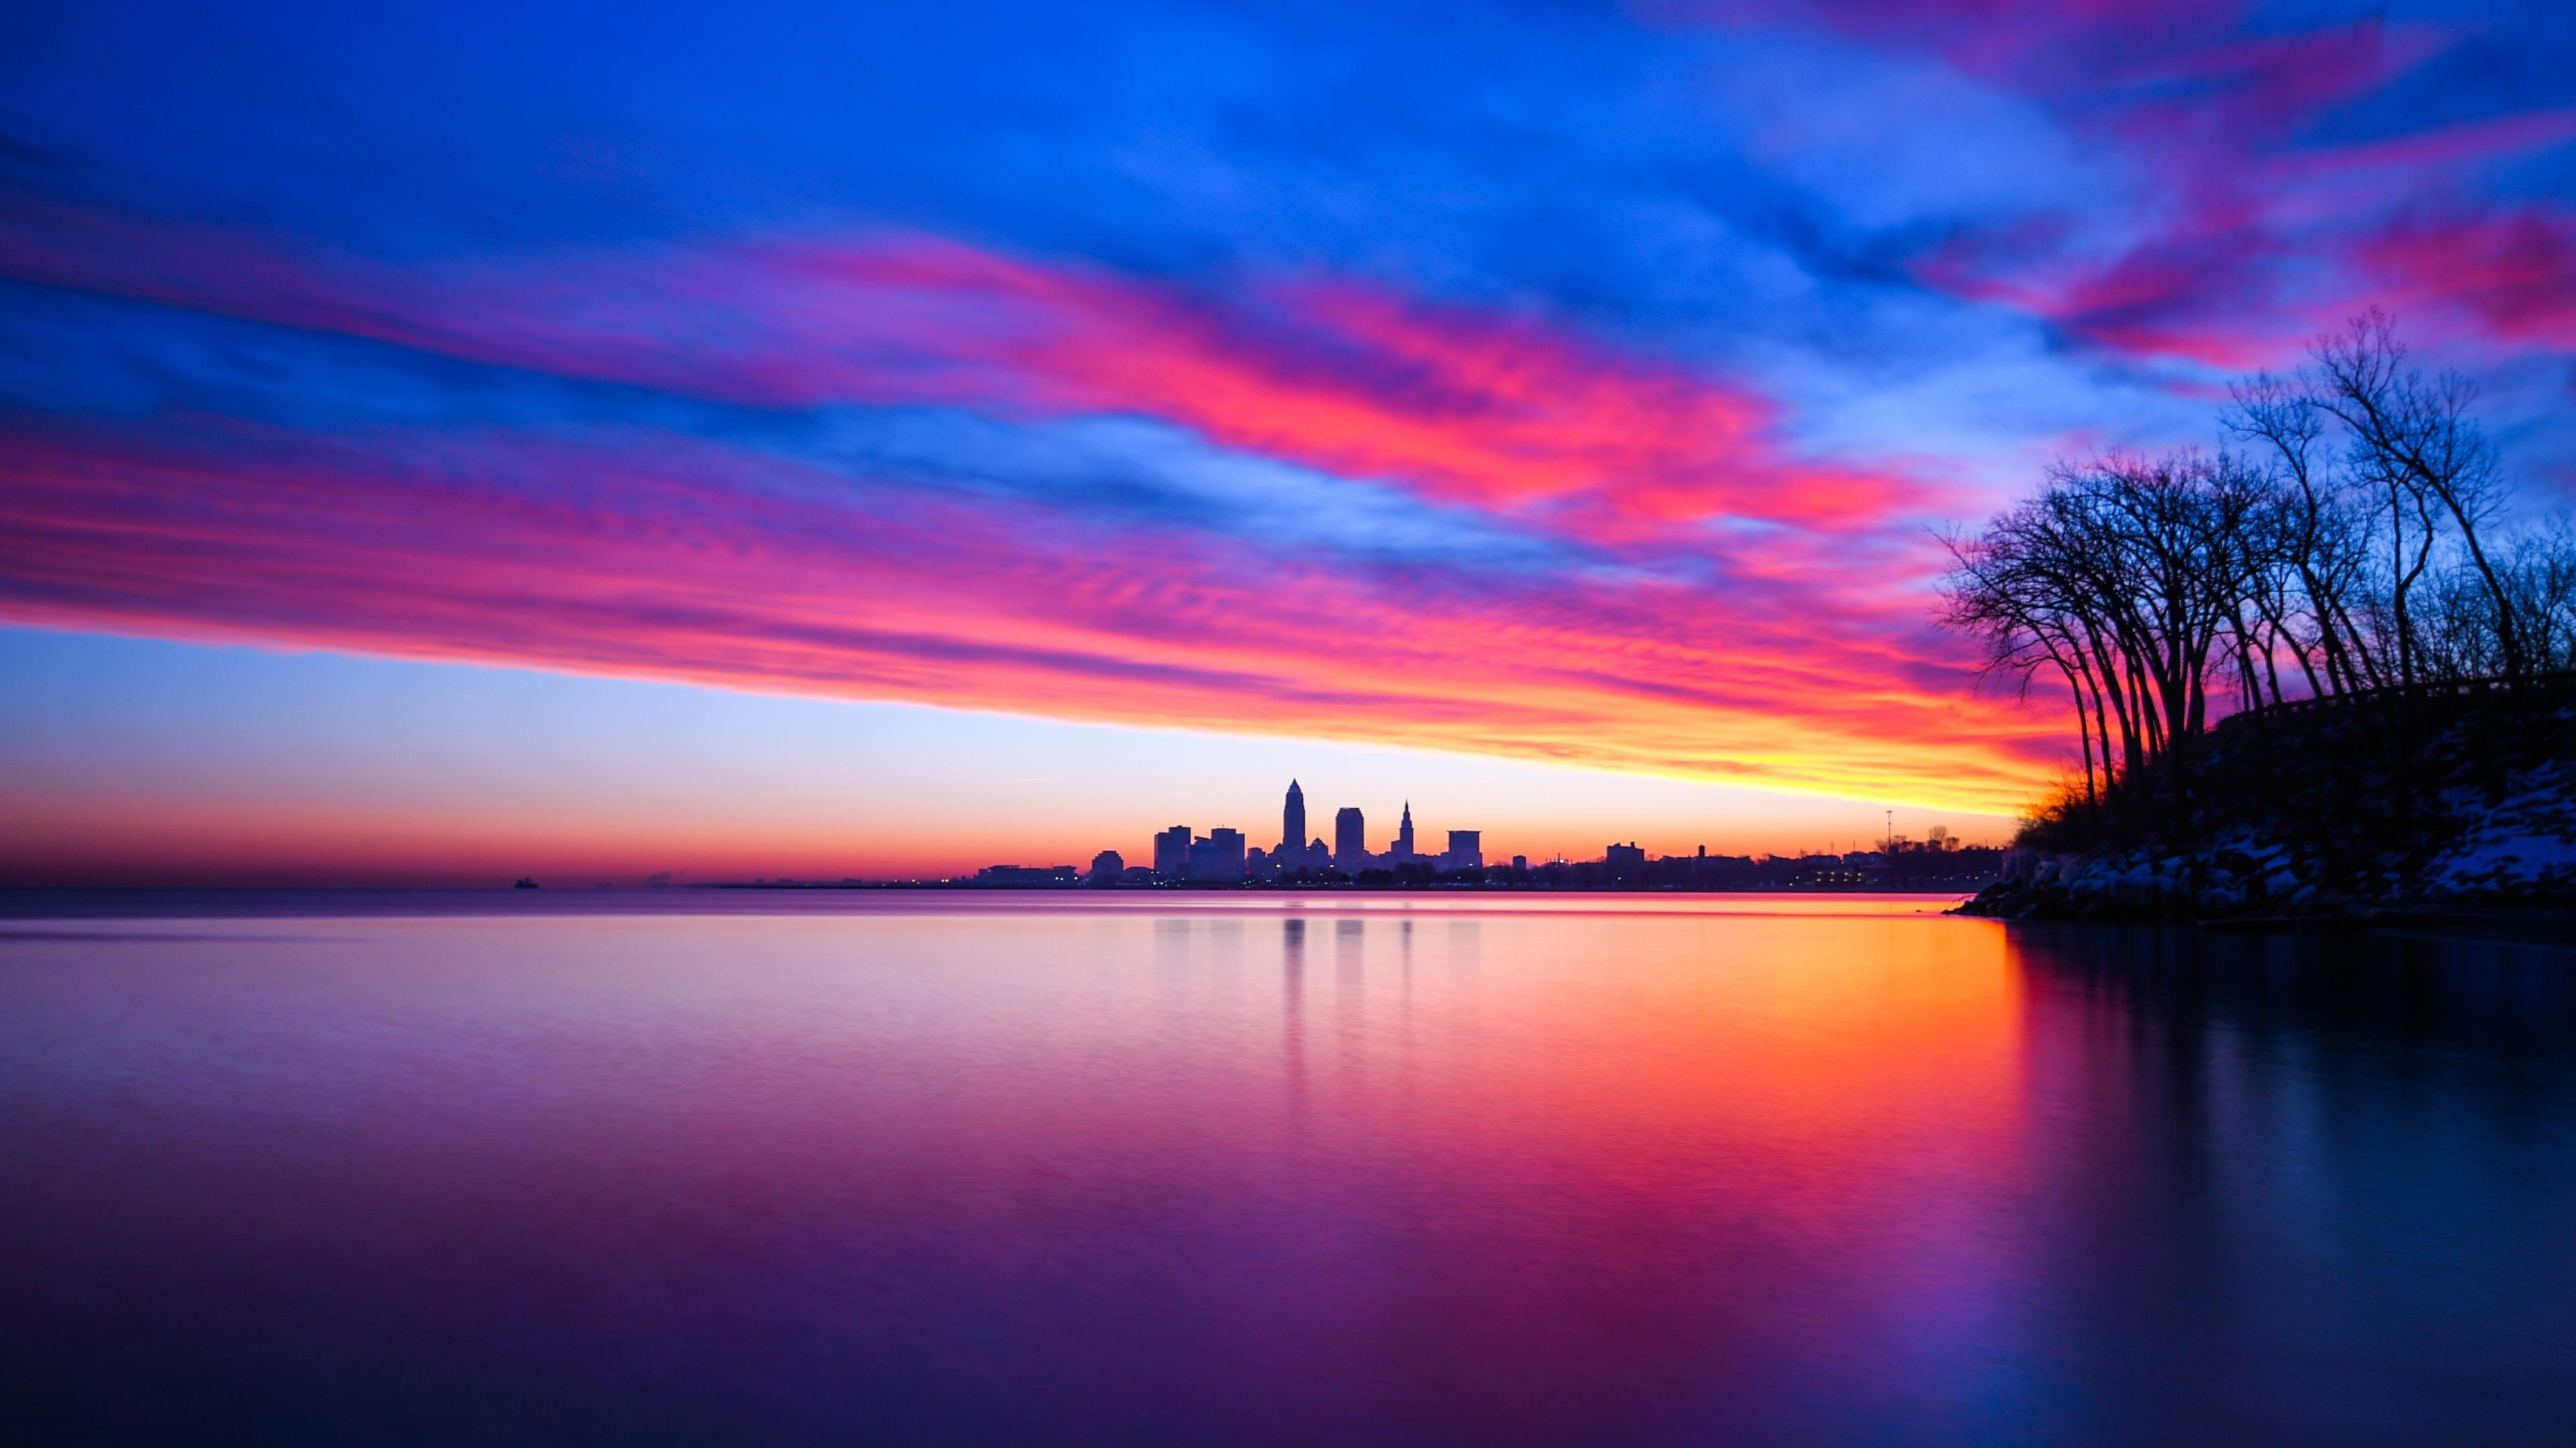 Wallpaper Cleveland Sunset Landscape